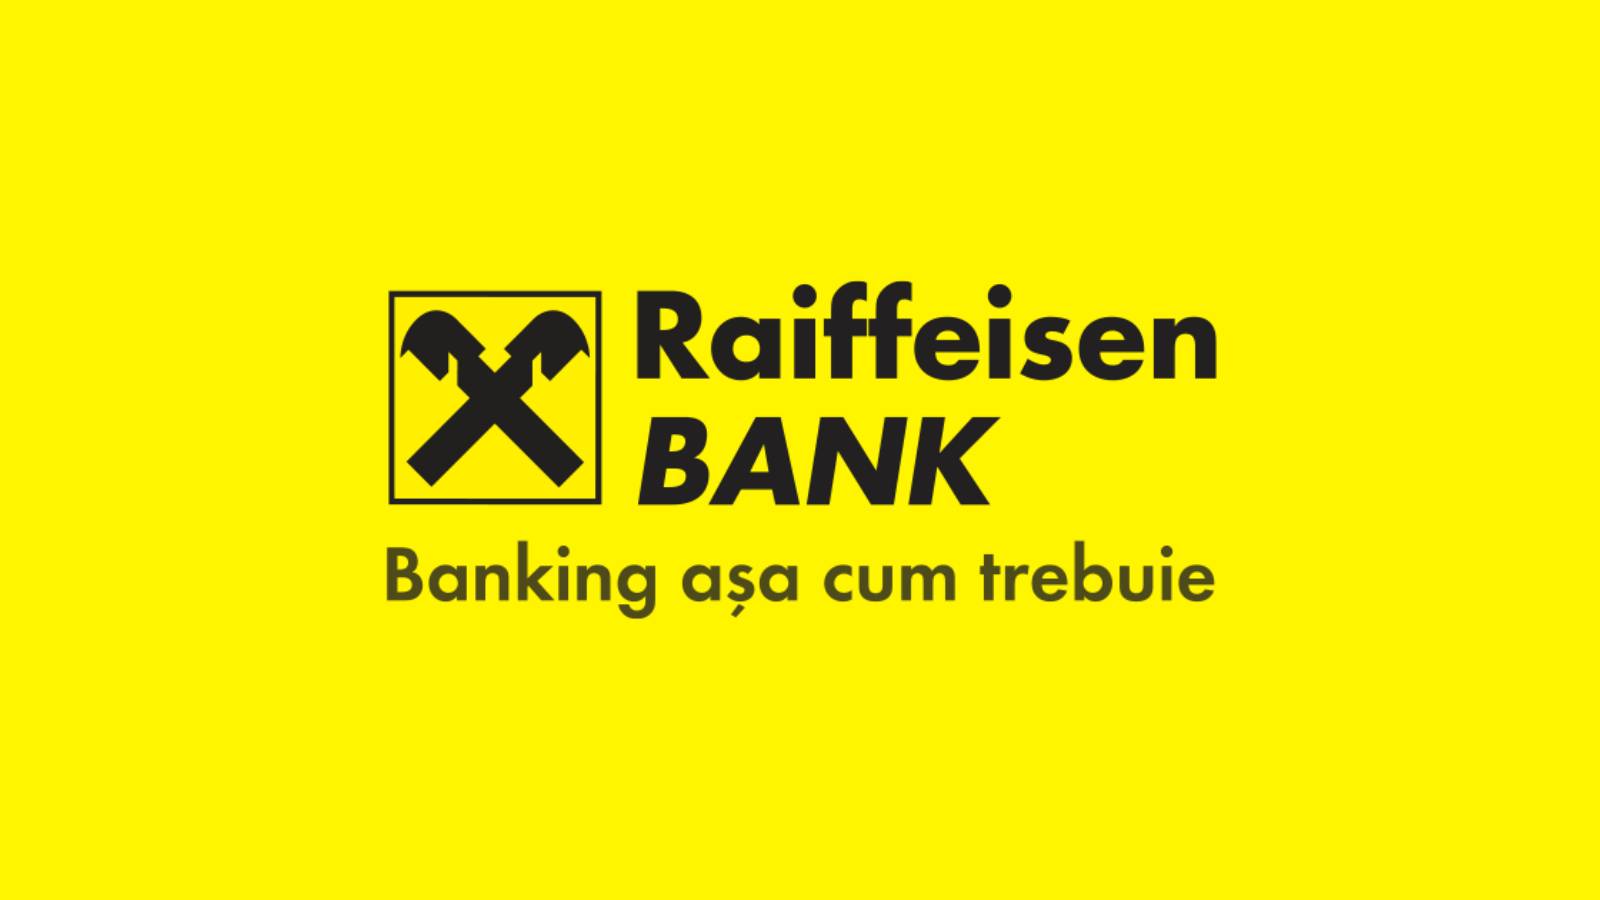 Offizieller Beschluss der Raiffeisen Bank KOSTENLOS, um den Sommer schöner zu machen